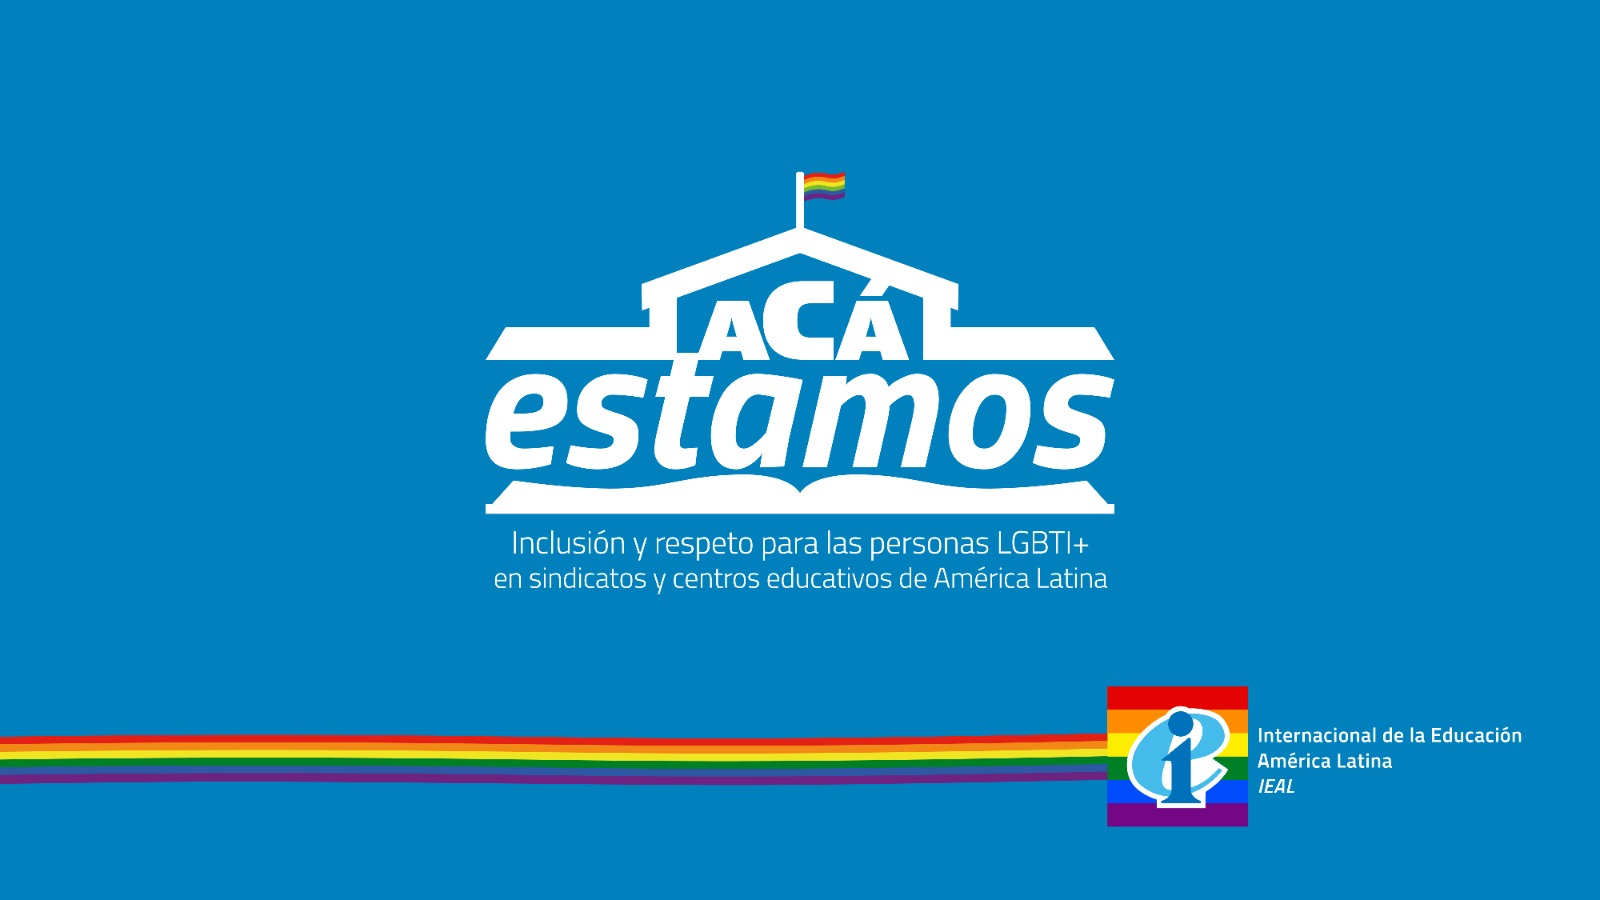 Internacional de la Educación América Latina lanza campaña por mayor inclusión y respeto para las personas LGBTI+ en centros educativos y organizaciones sindicales de la región